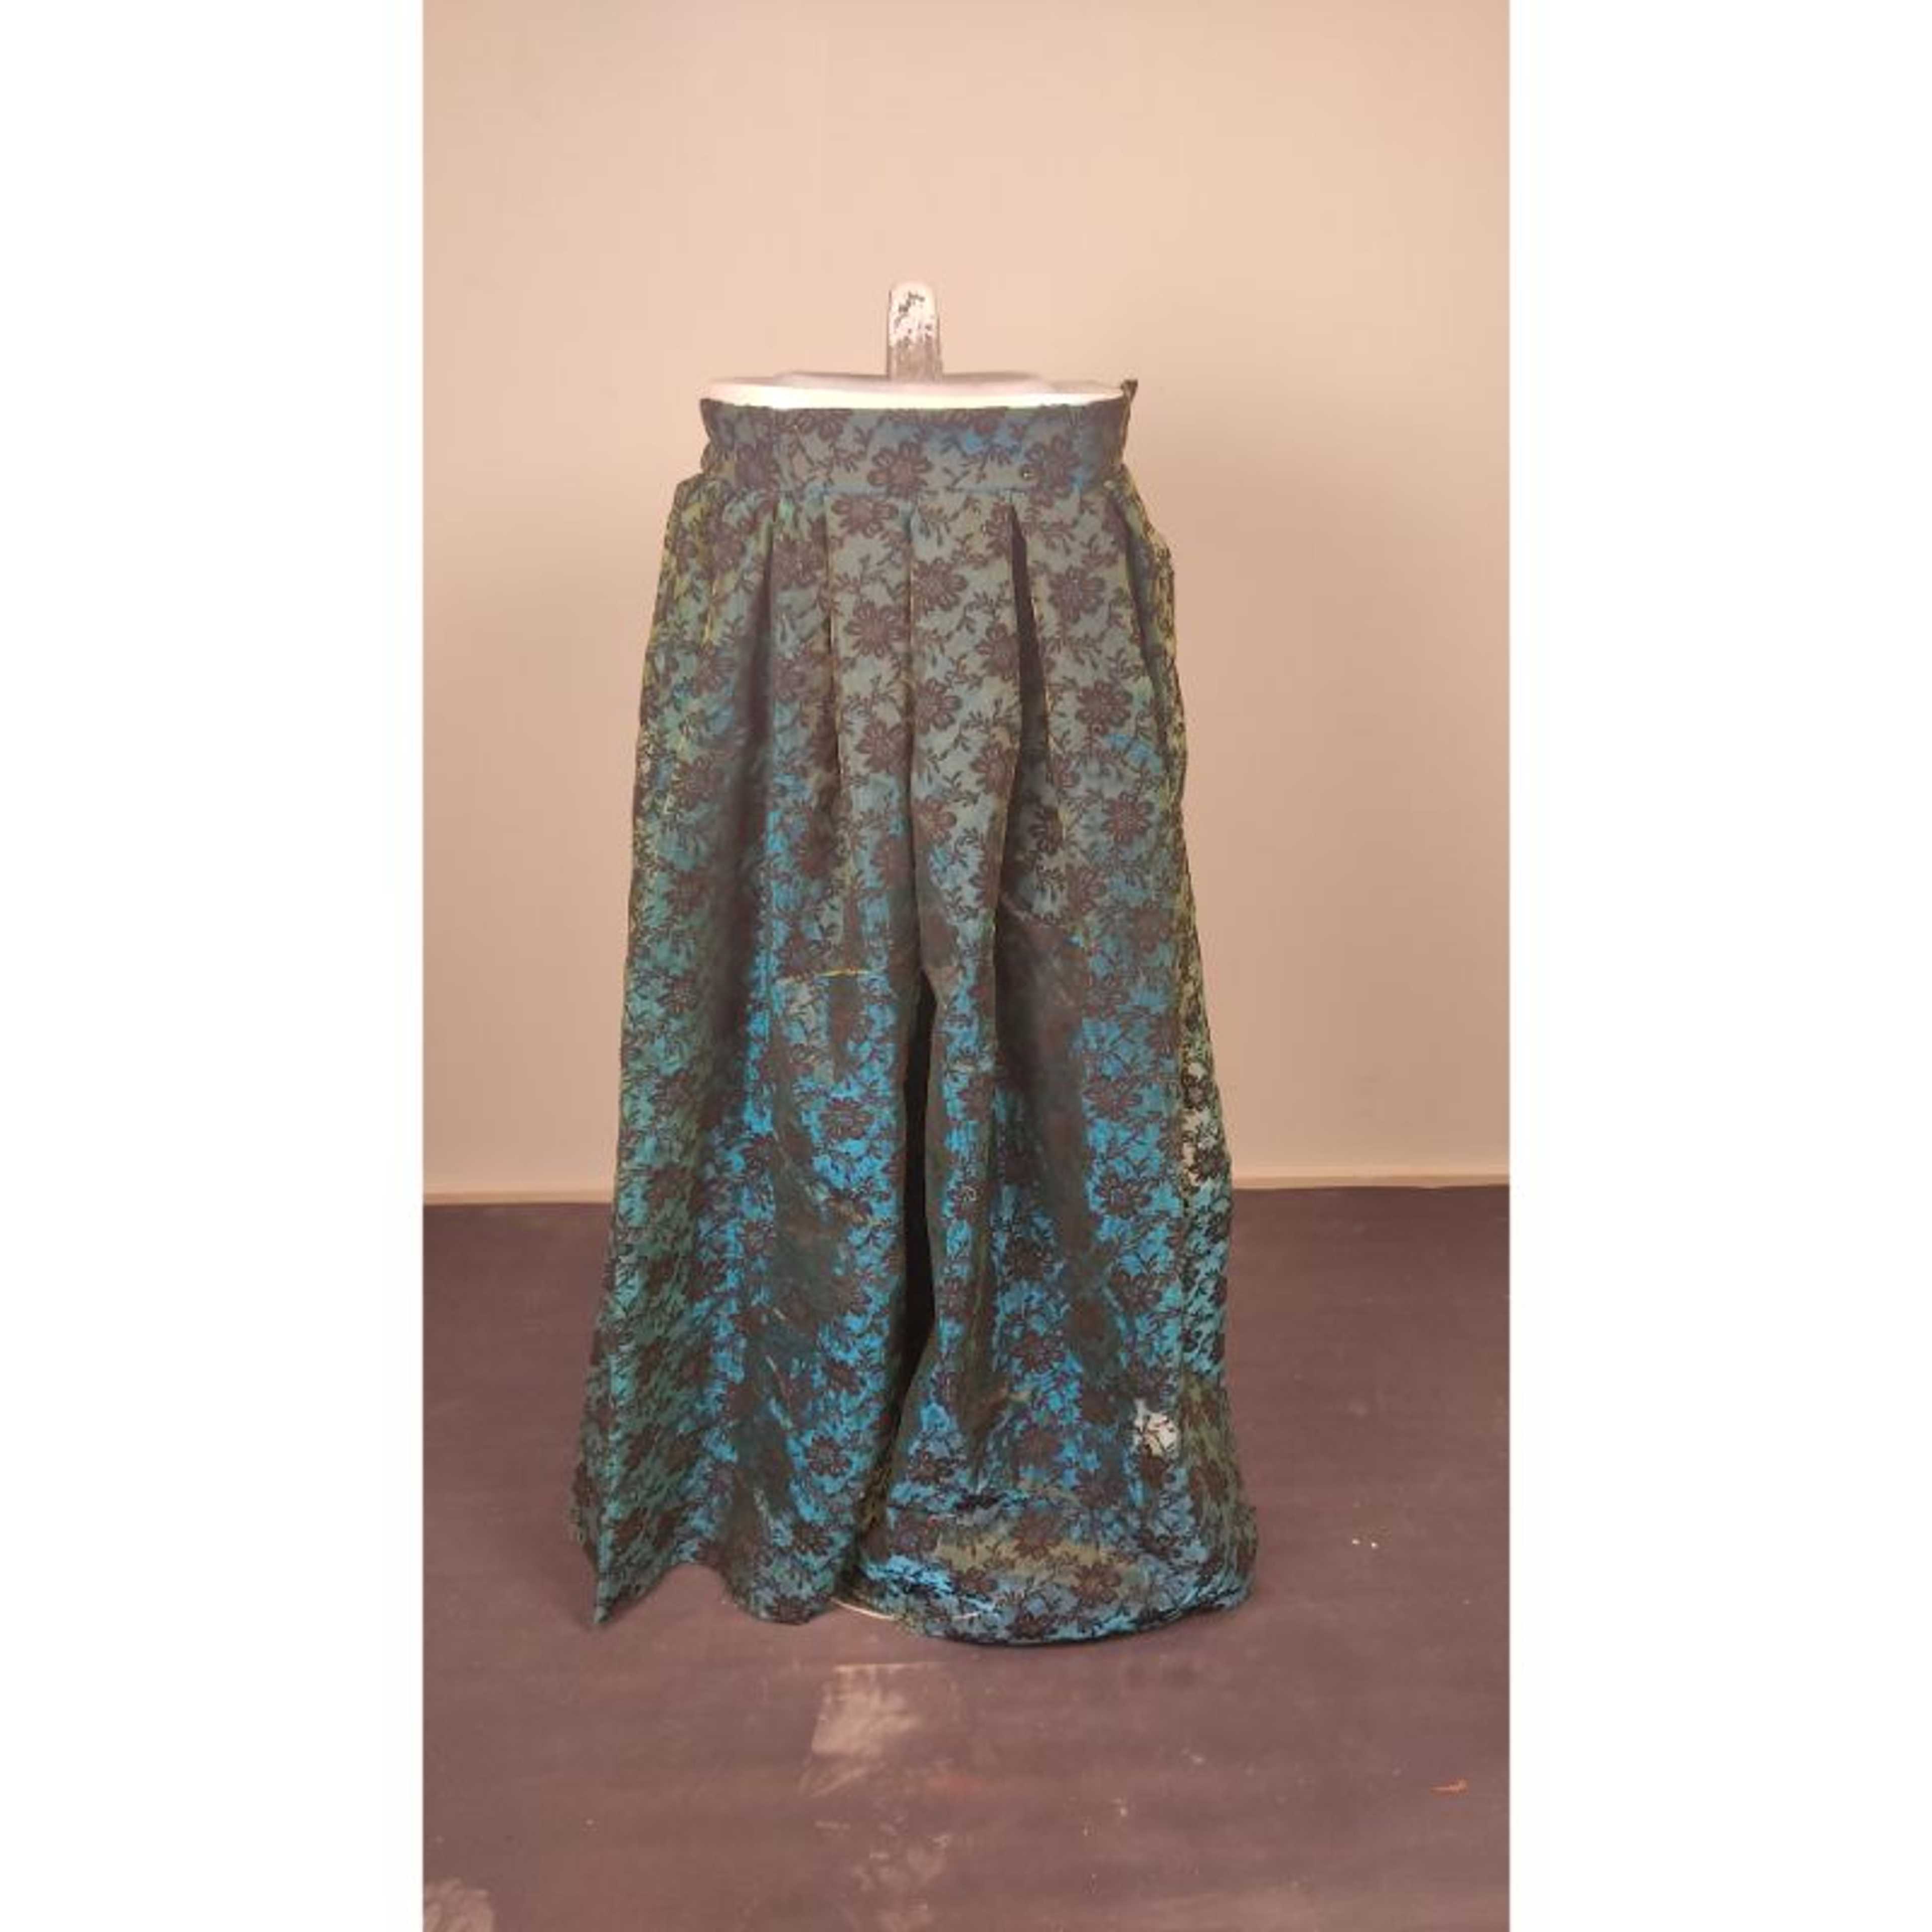 Floral Green Fancy Net Skirt by Zeros Apparel